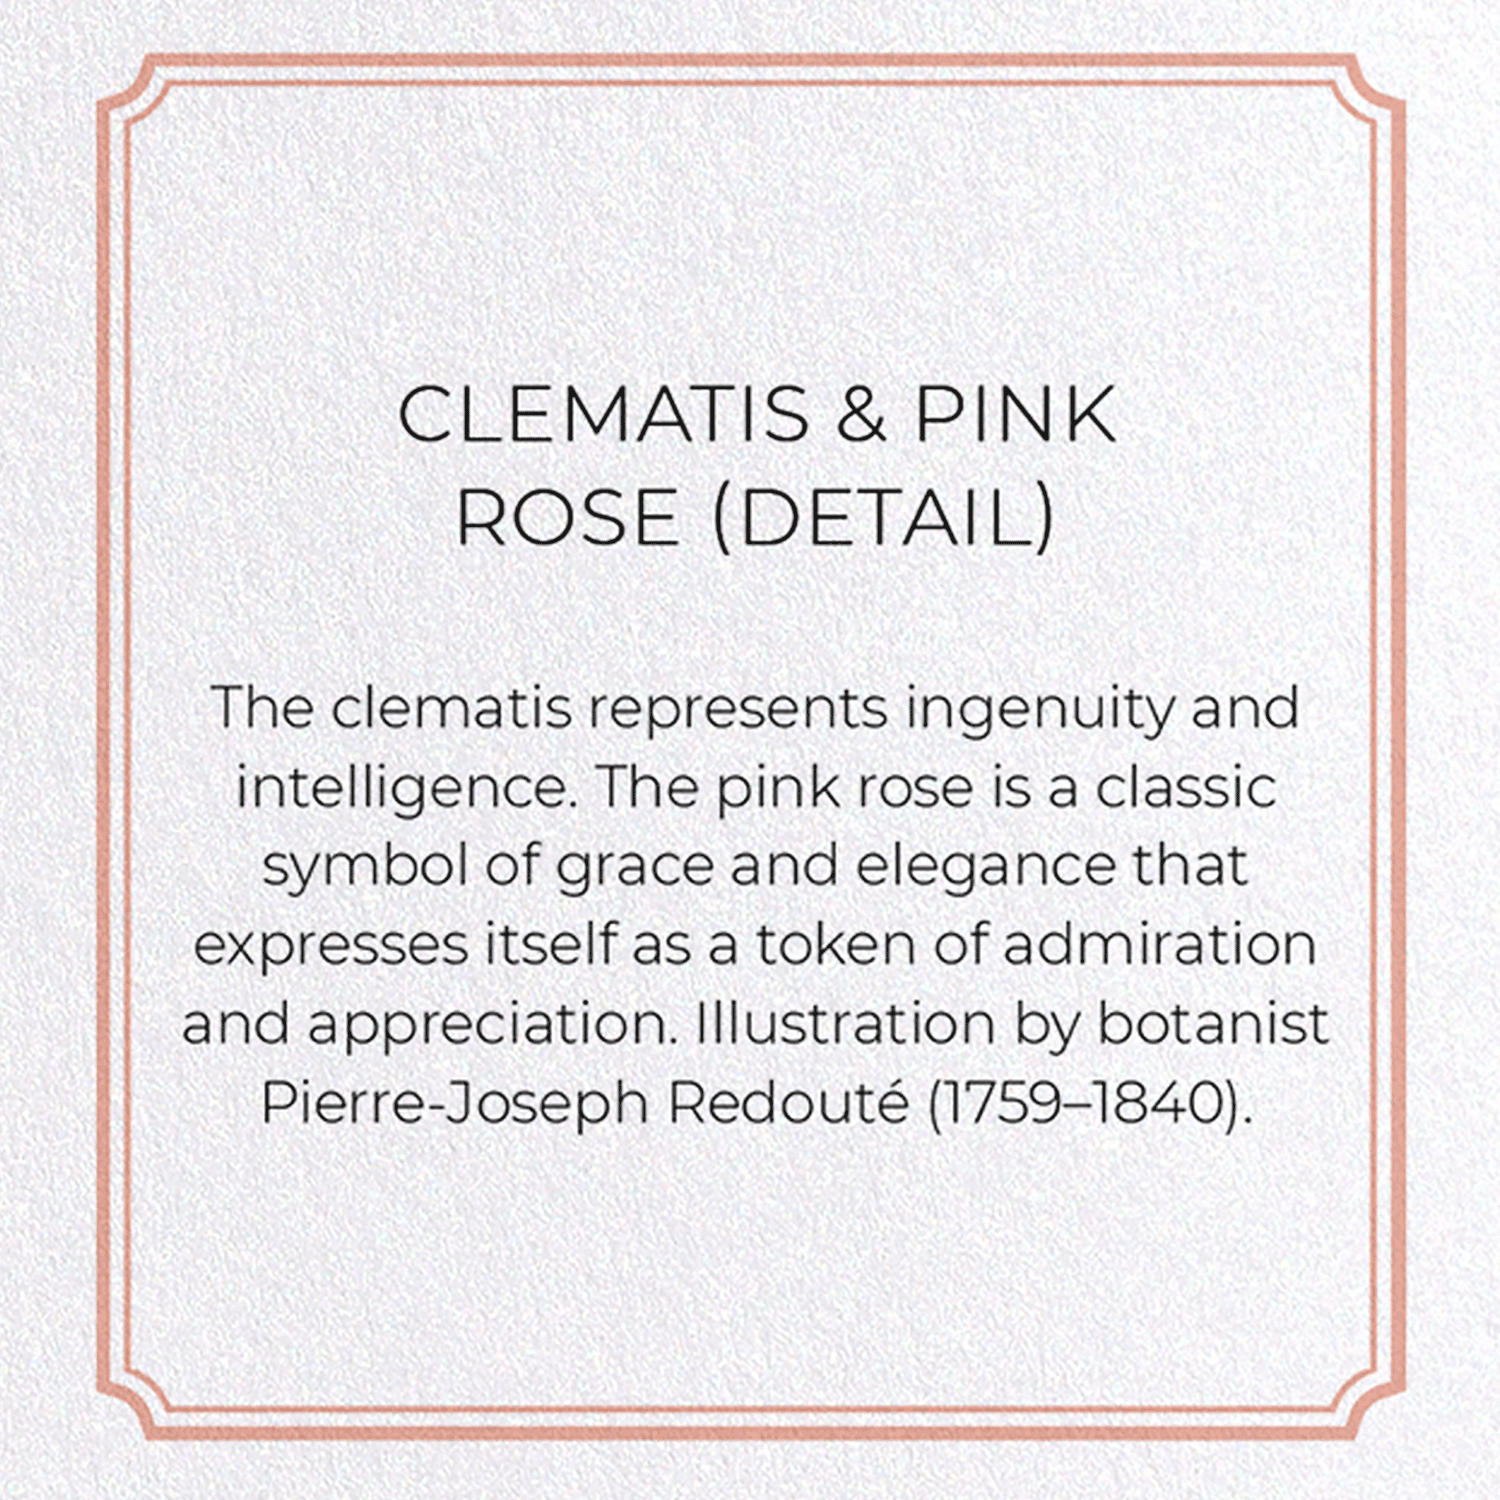 CLEMATIS & PINK ROSE